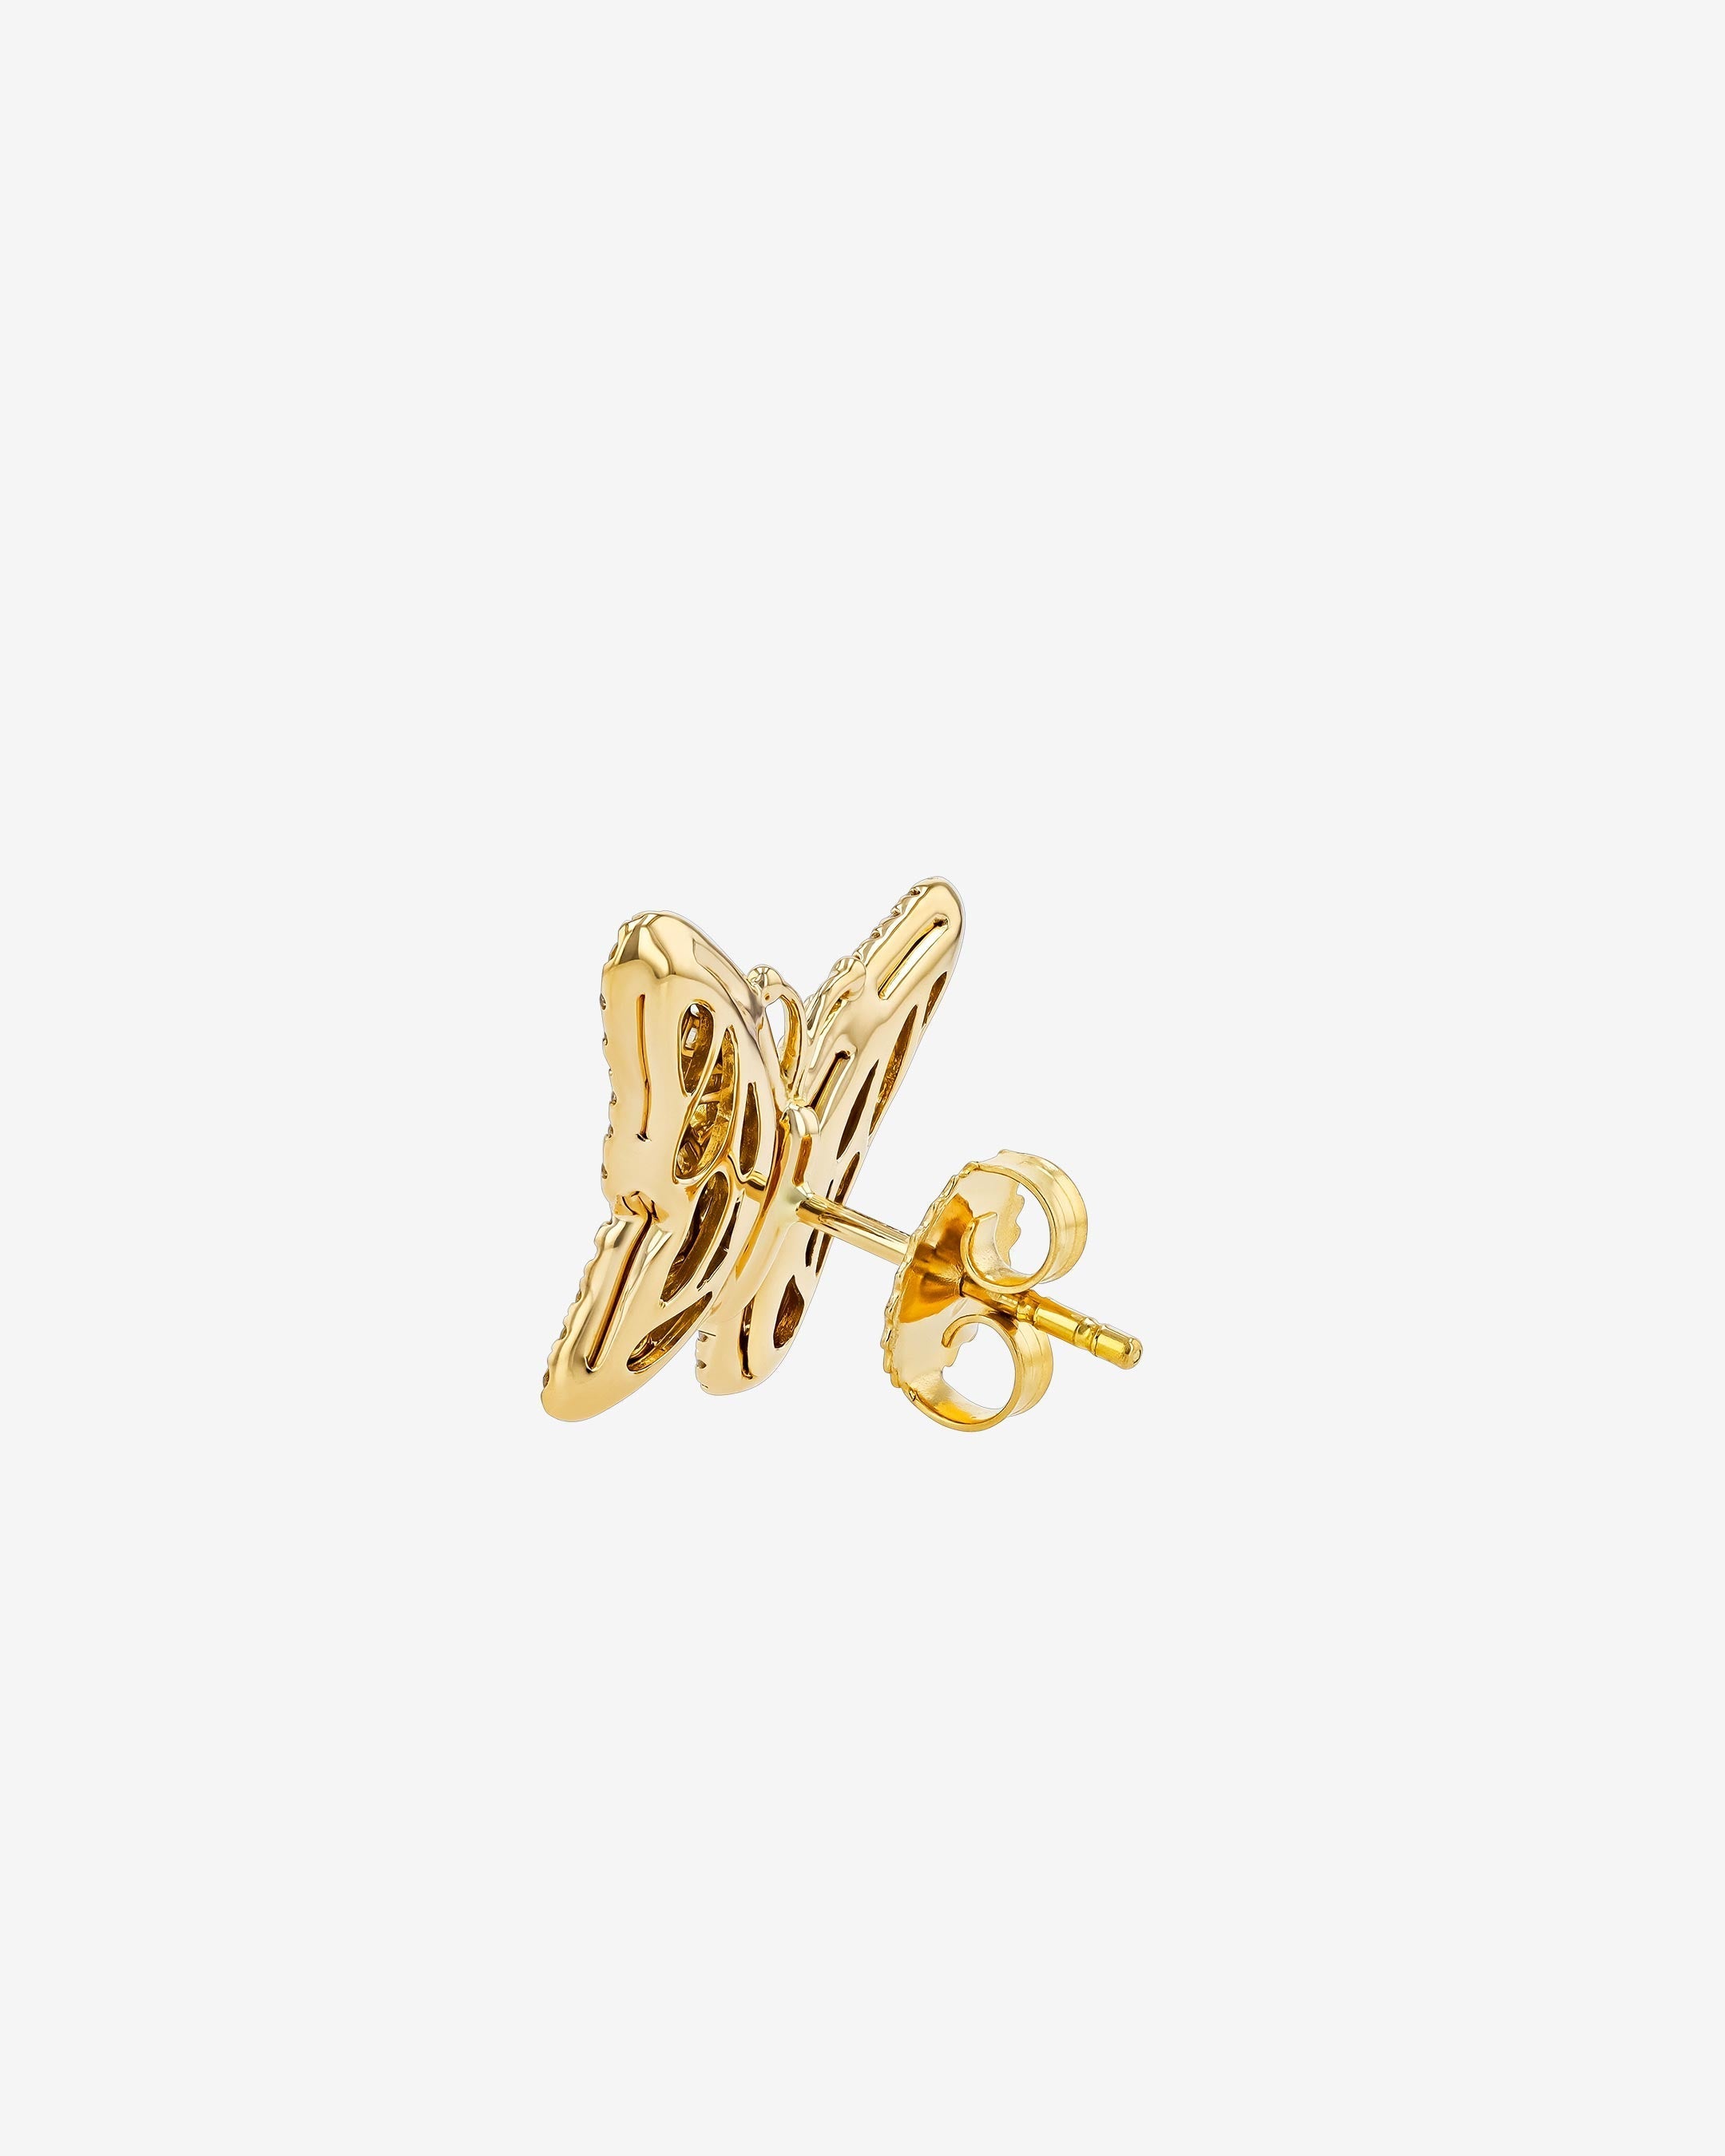 Suzanne Kalan Small Butterfly Diamond Stud Earrings in 18k yellow gold